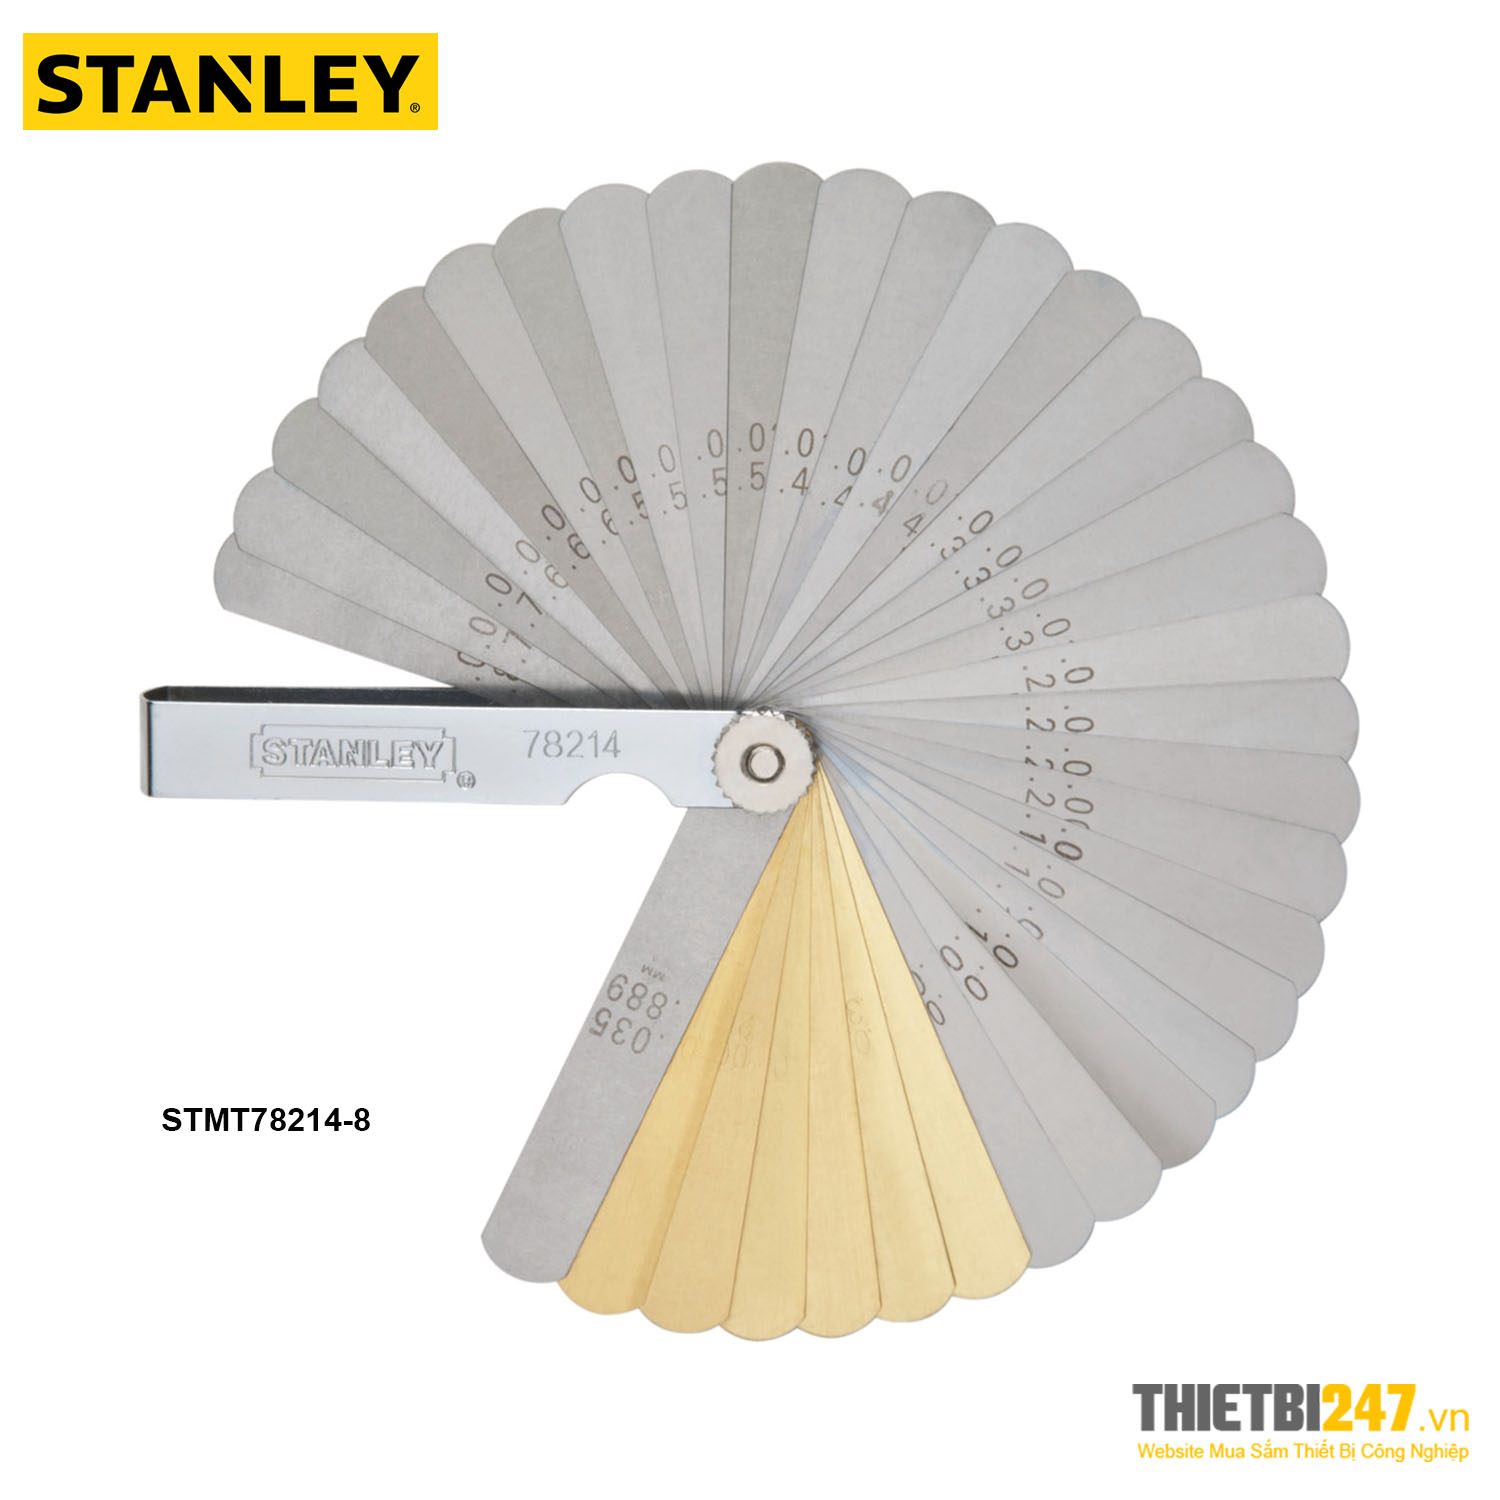 Bộ dưỡng đo khe hở Stanley STMT78214-8 36 lá